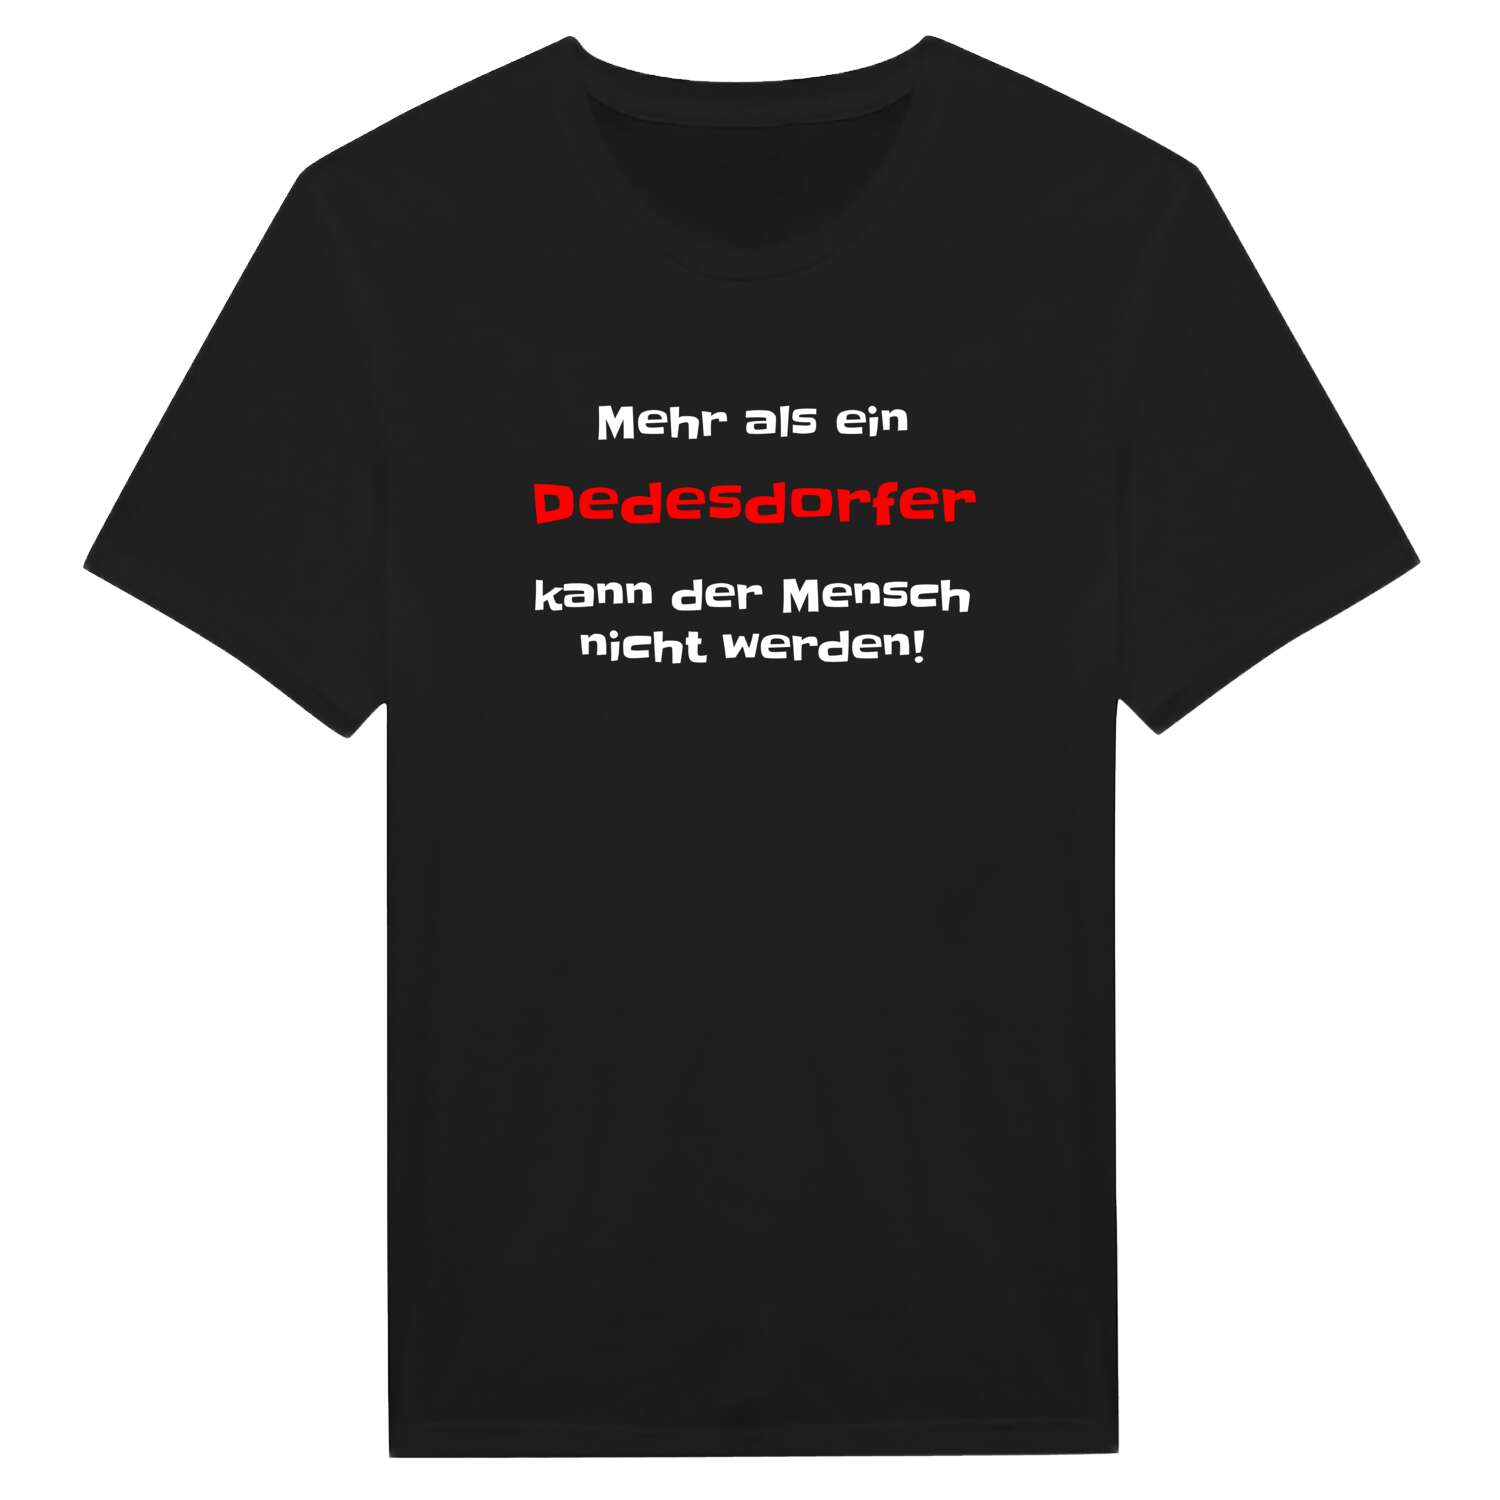 Dedesdorf T-Shirt »Mehr als ein«